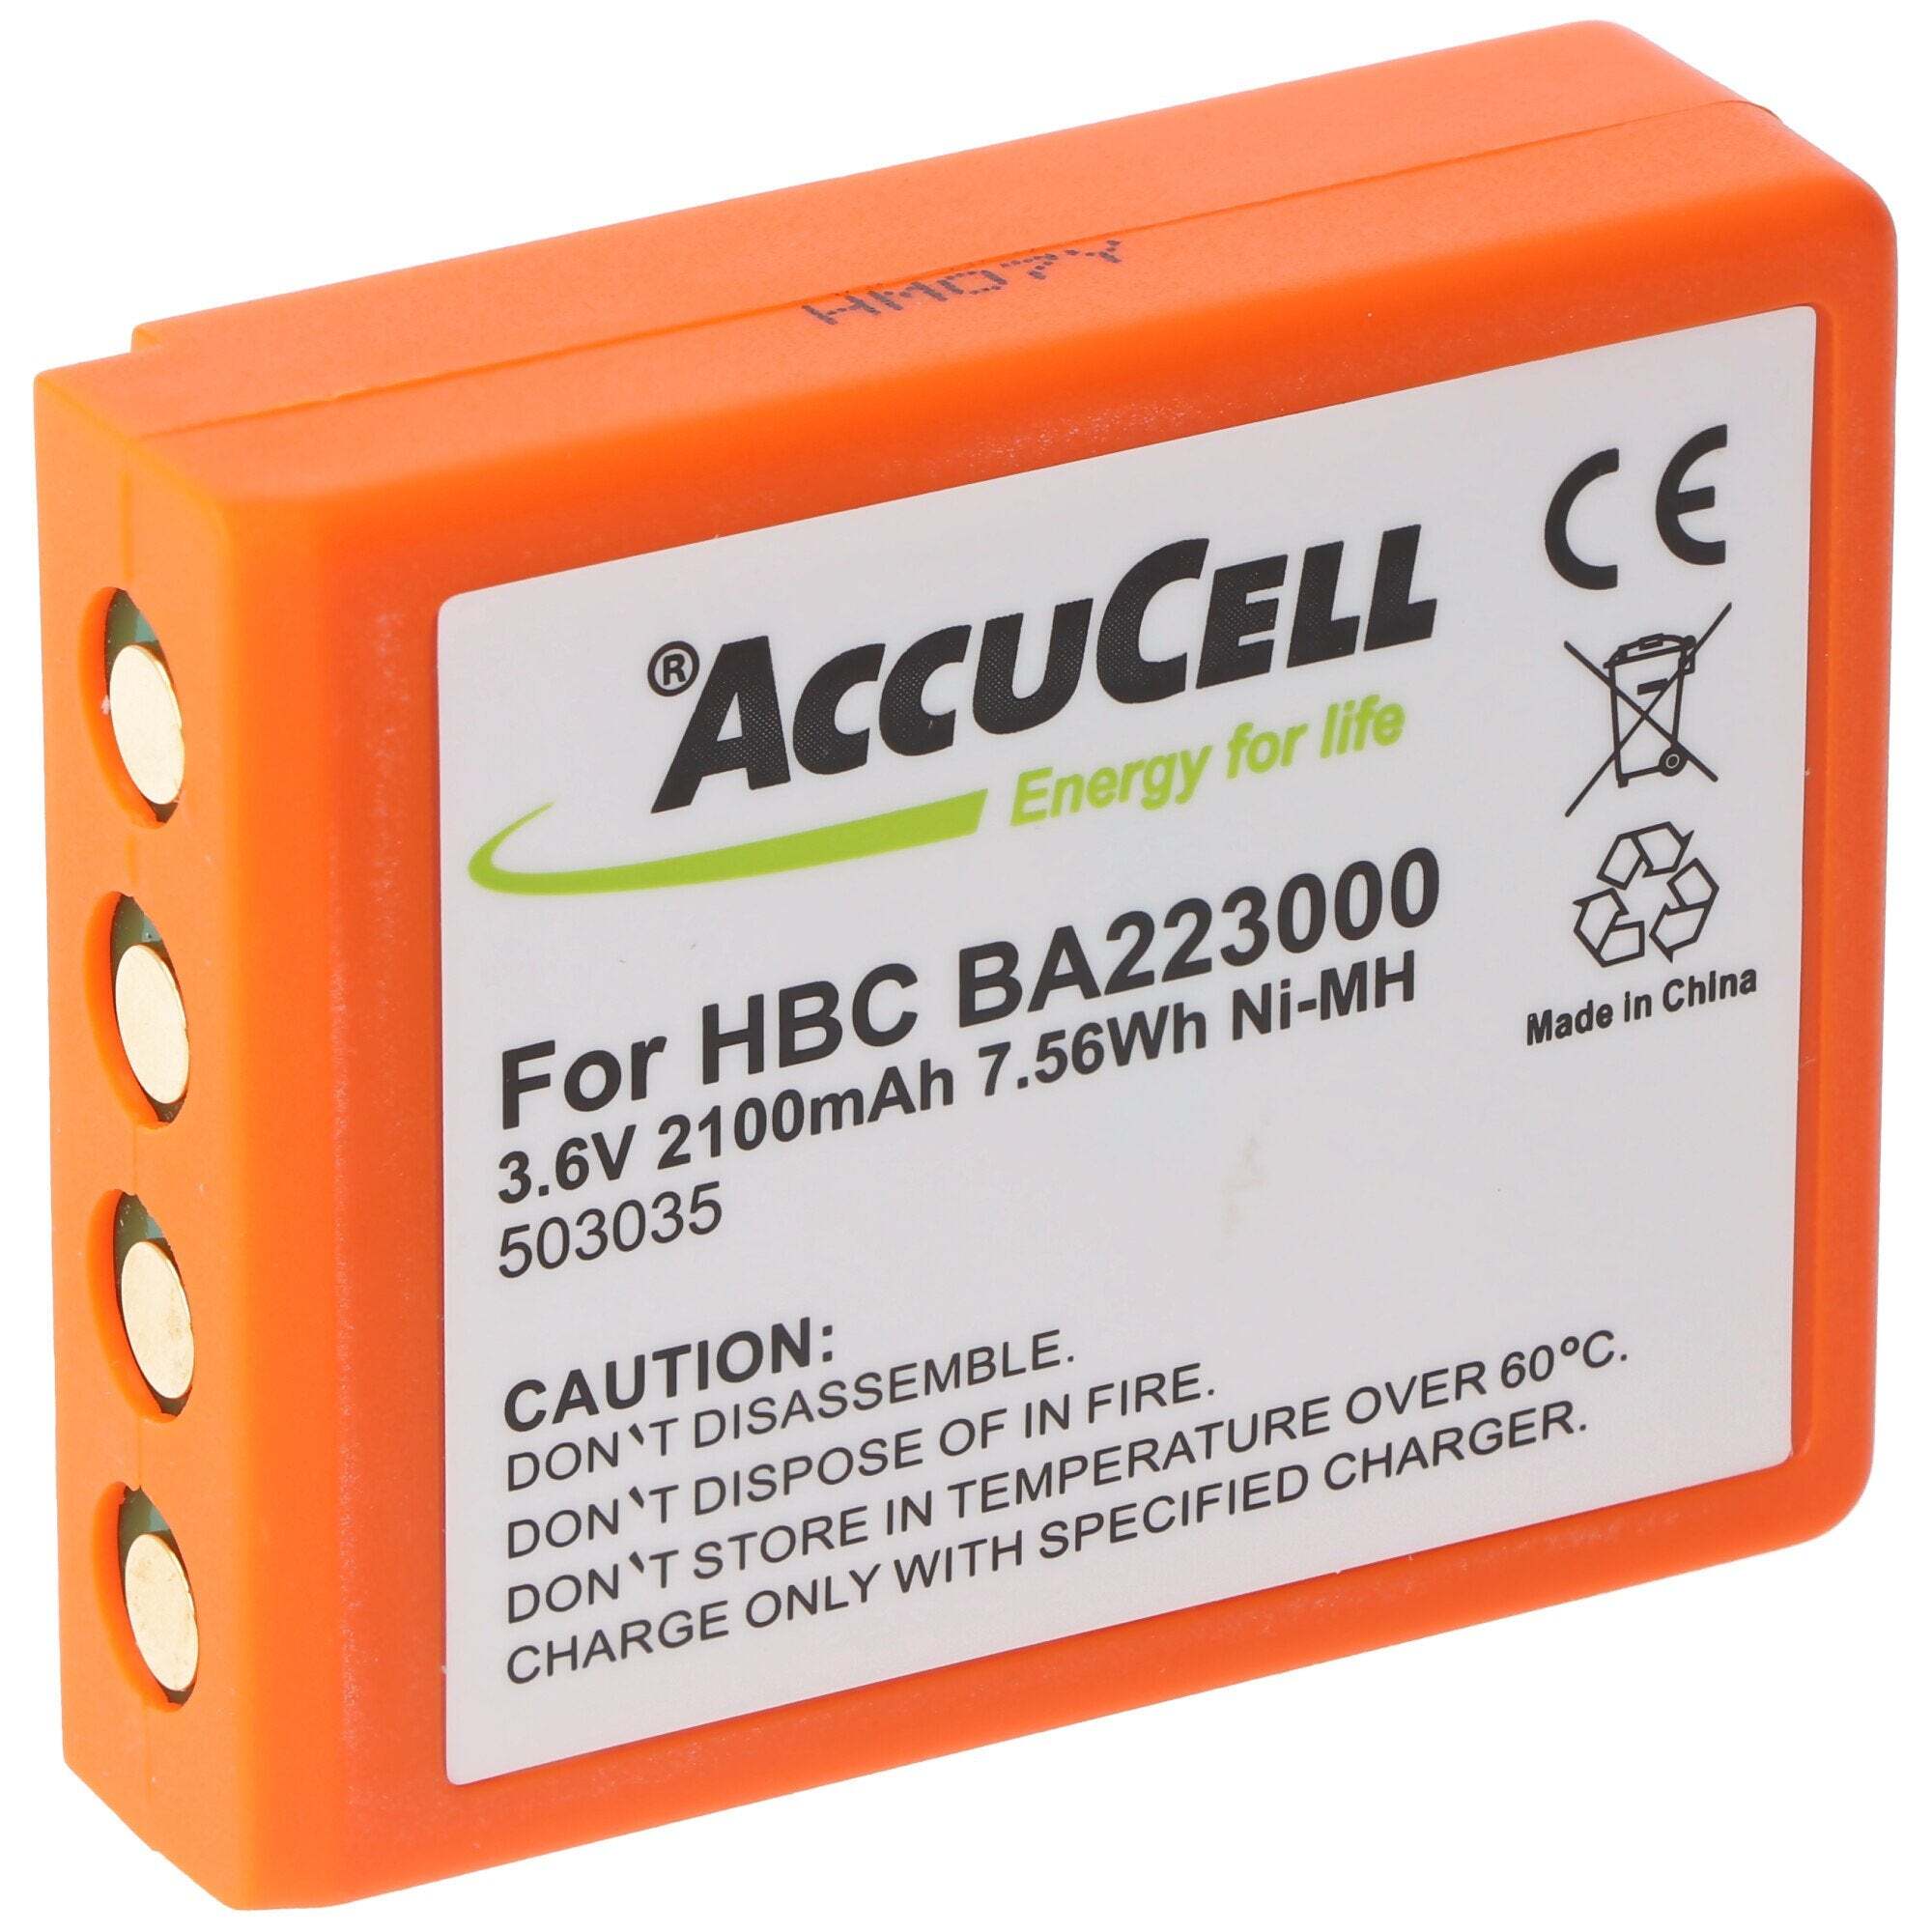 ACCUCELL HBC BA223000 batterij geschikt voor HBC kraanbesturing van AccuCell